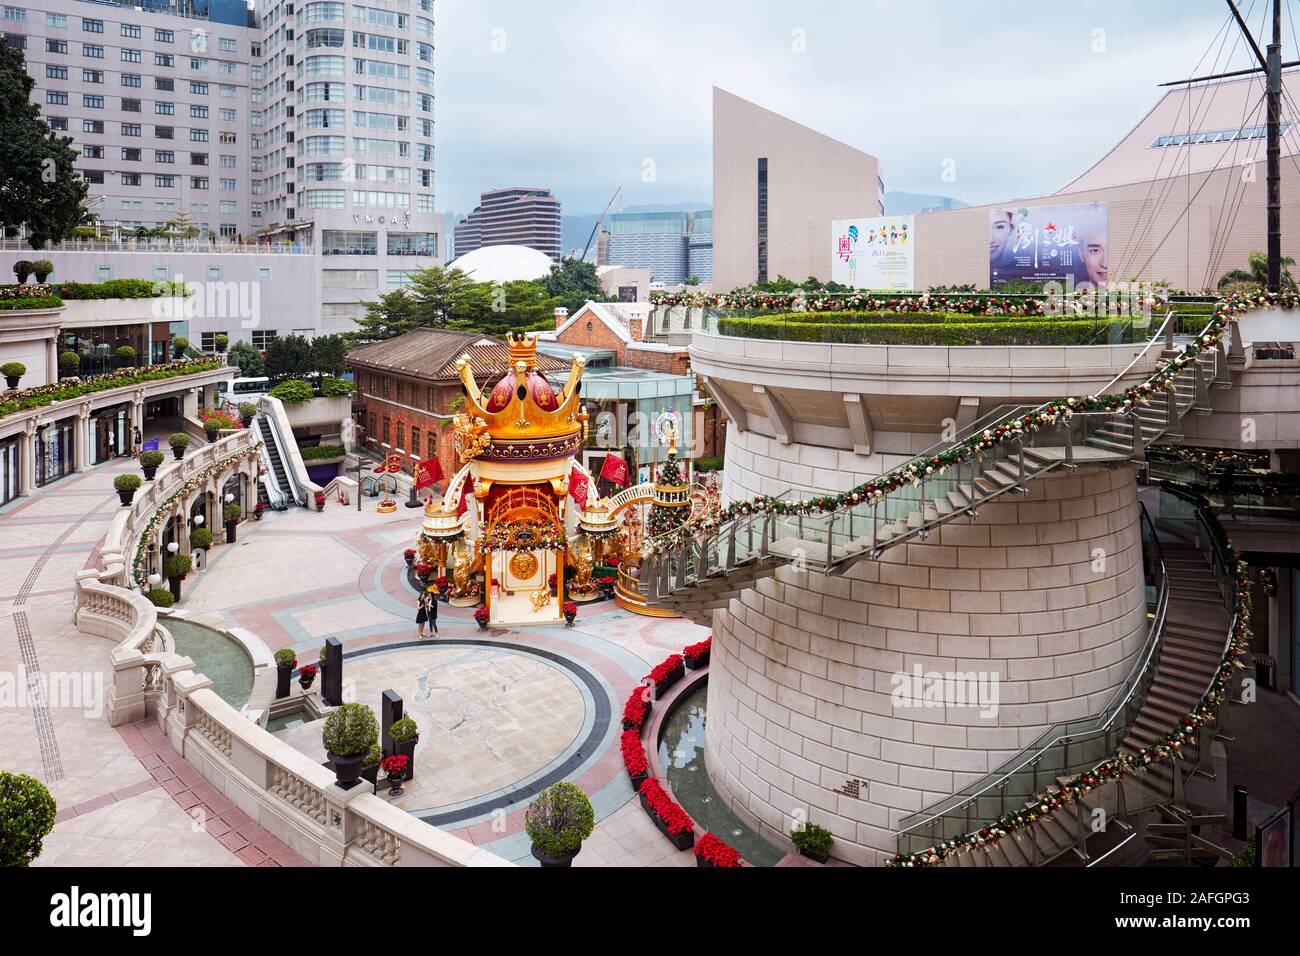 Plaza di fronte al centro commerciale a 1881 composto del patrimonio. Tsim Sha Tsui, Kowloon, Hong Kong, Cina. Foto Stock